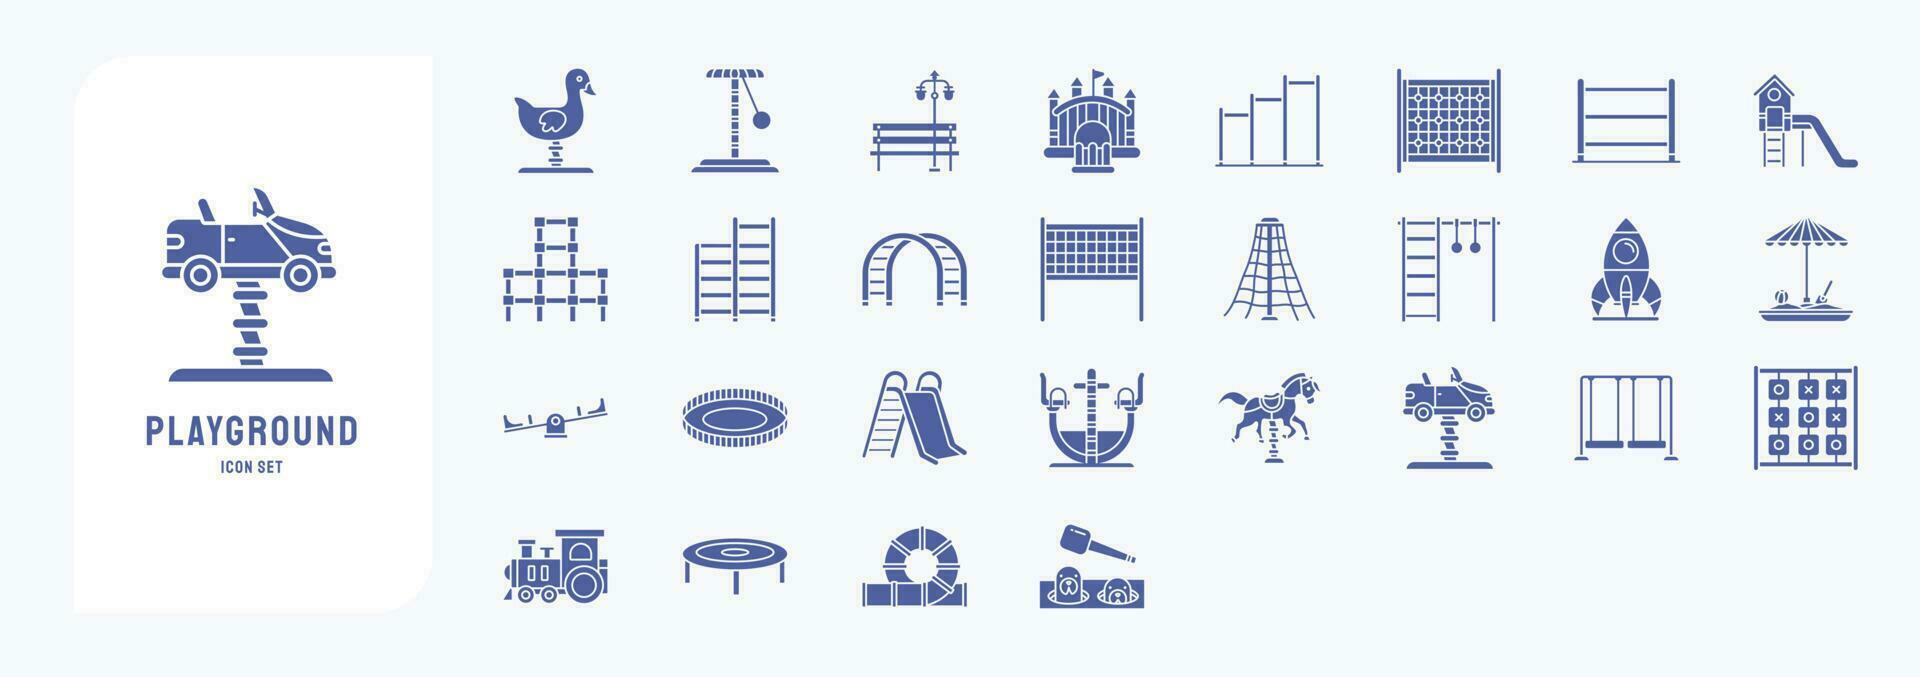 verzameling van pictogrammen verwant naar speelplaats, inclusief pictogrammen Leuk vinden bal zwembad, kin omhoog bar, jumping bar, ringen, zien zag en meer vector